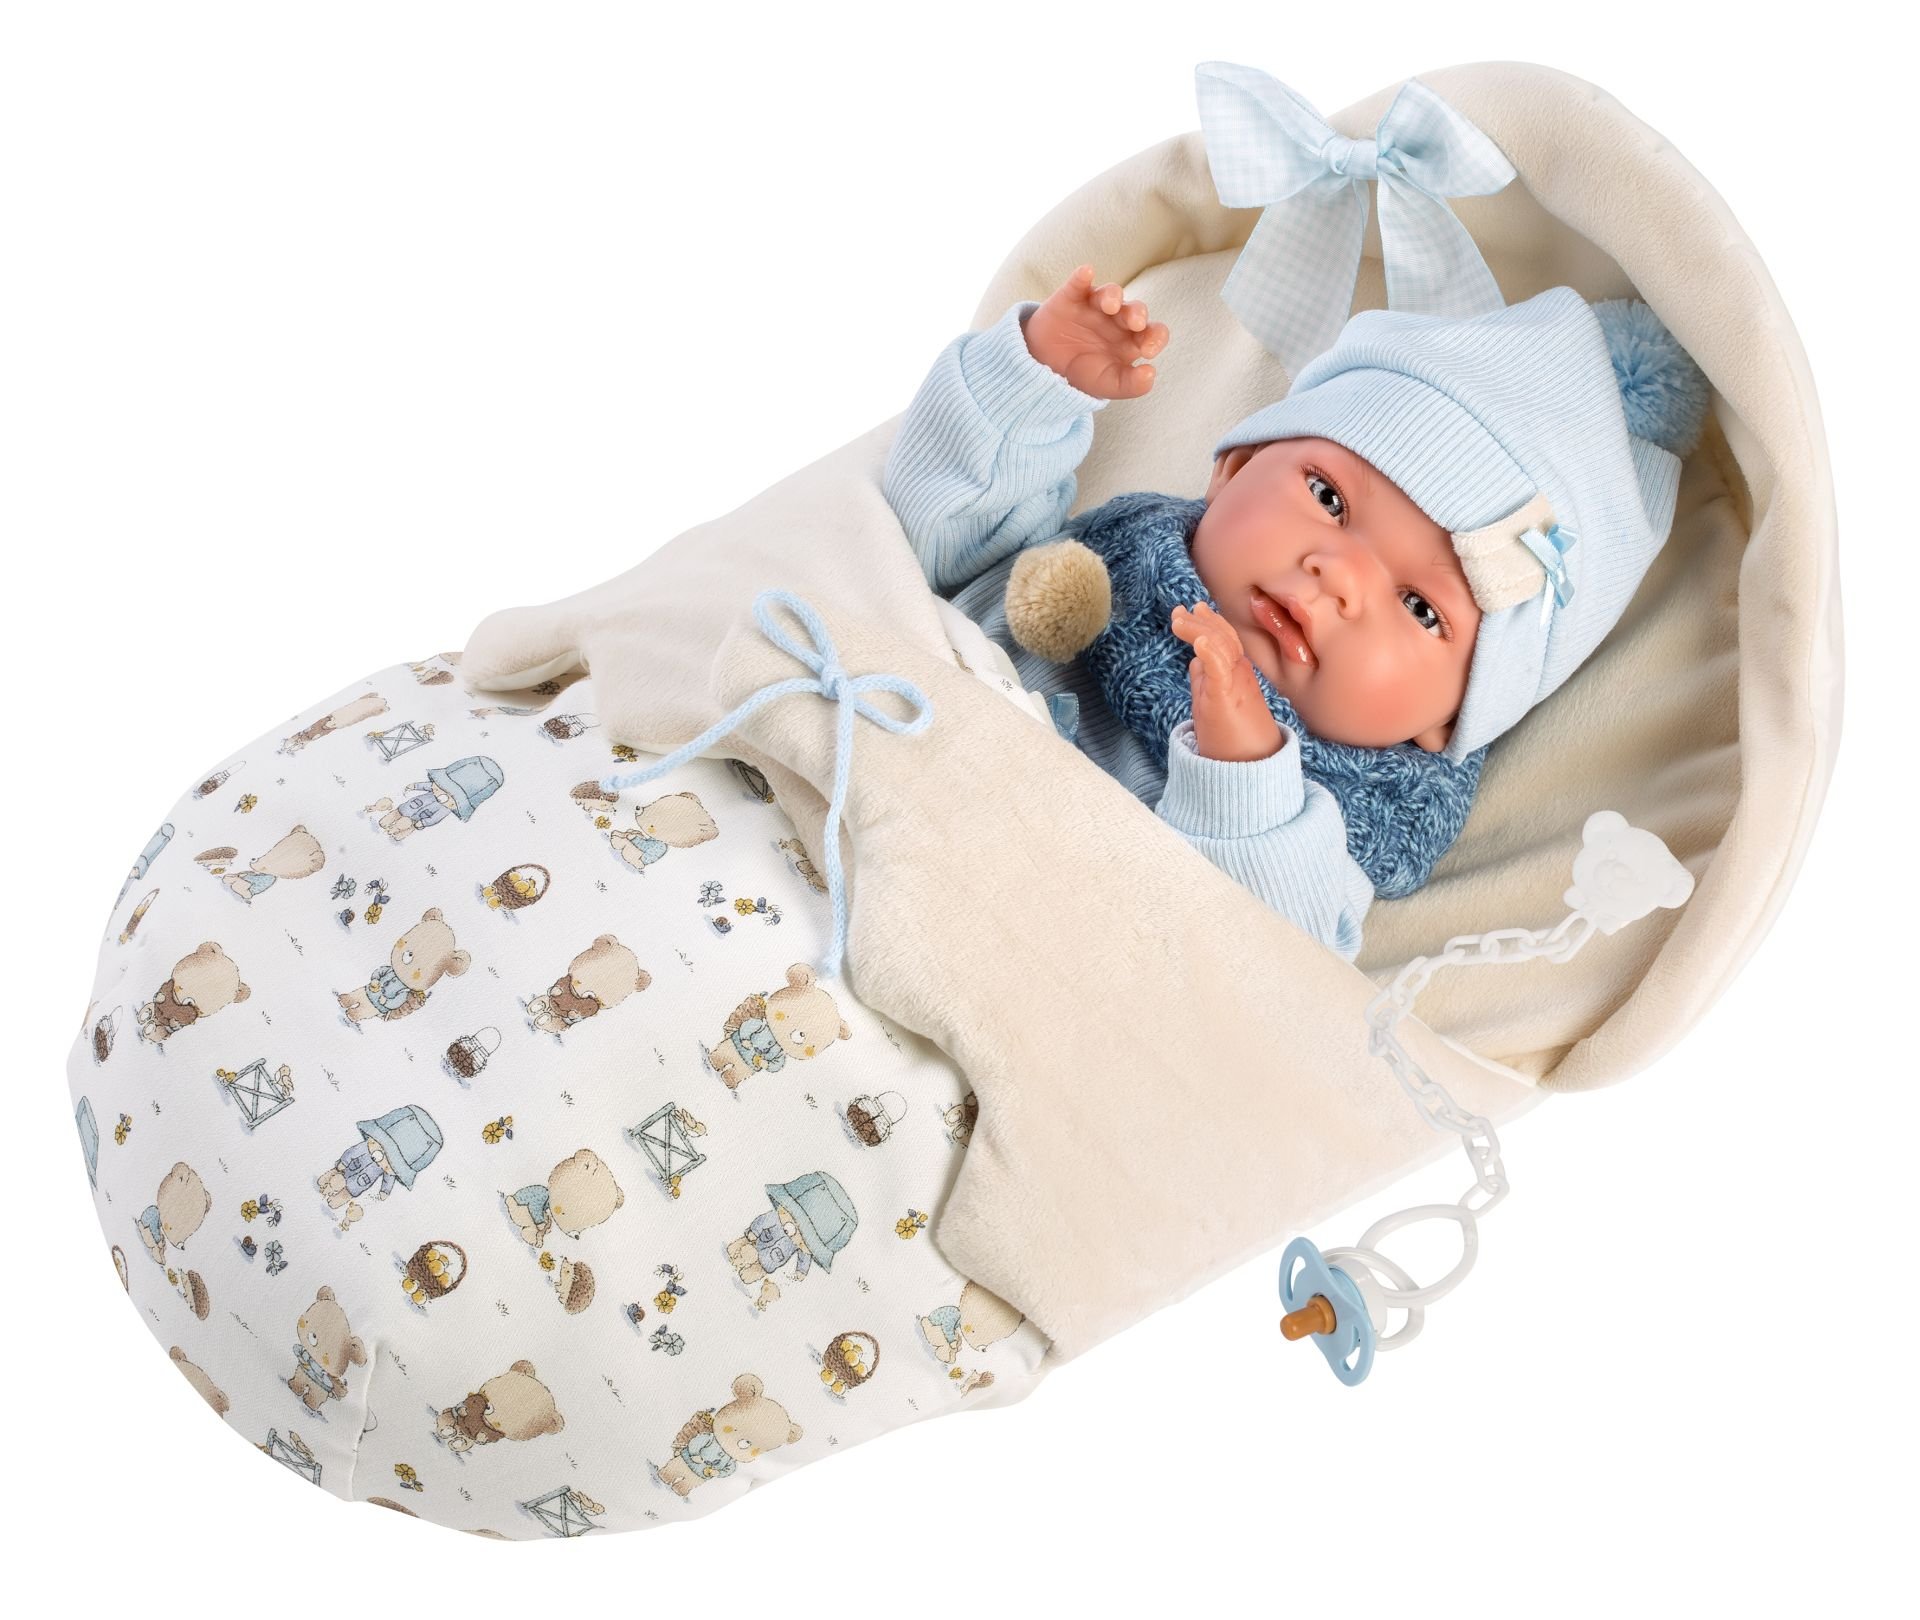 Levně Llorens 73885 NEW BORN CHLAPEČEK - realistická panenka miminko s celovinylovým tělem - 40 cm